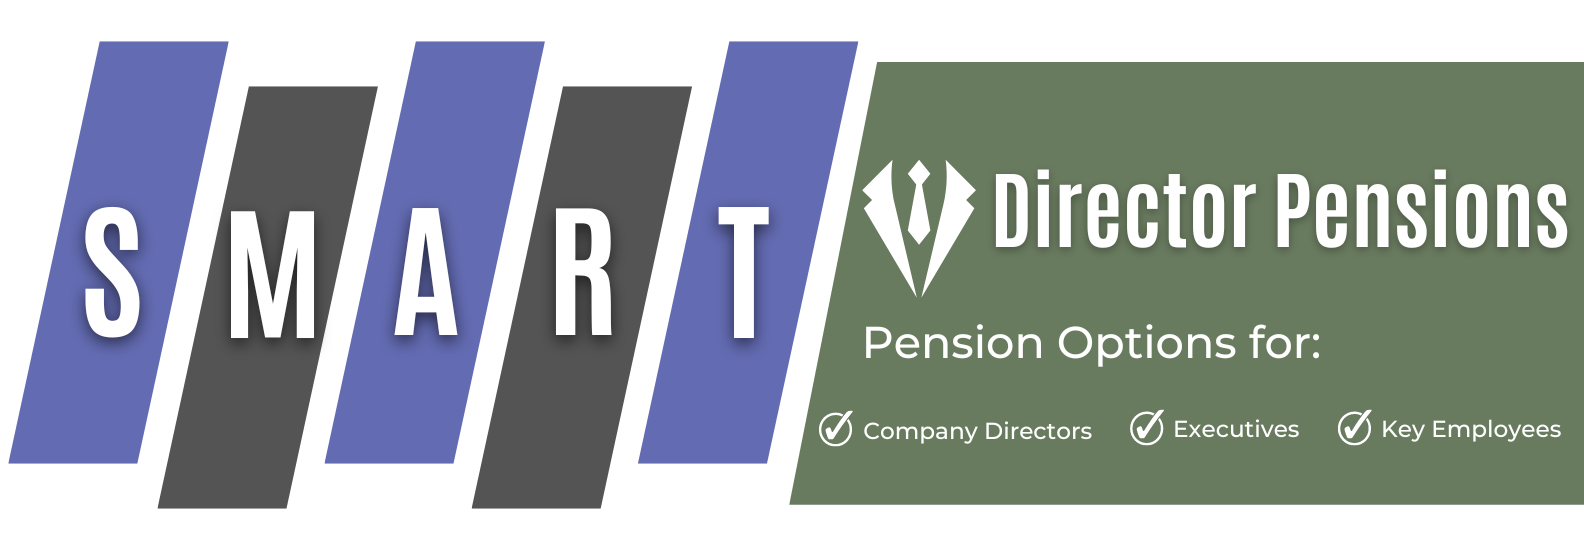 Directors Pension Ireland